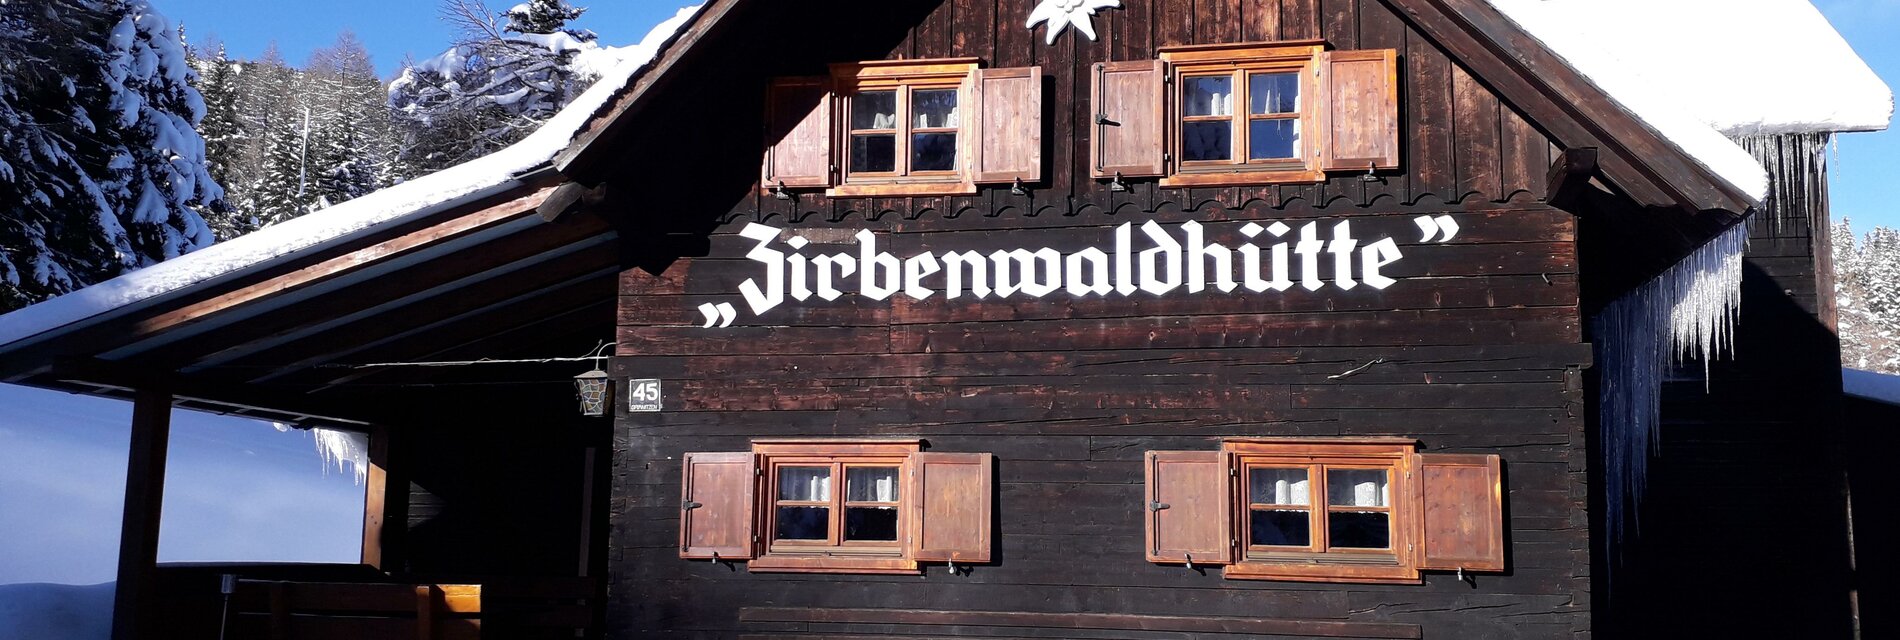 Zirbenwaldhütte-Winter-Murtal-Steiermark